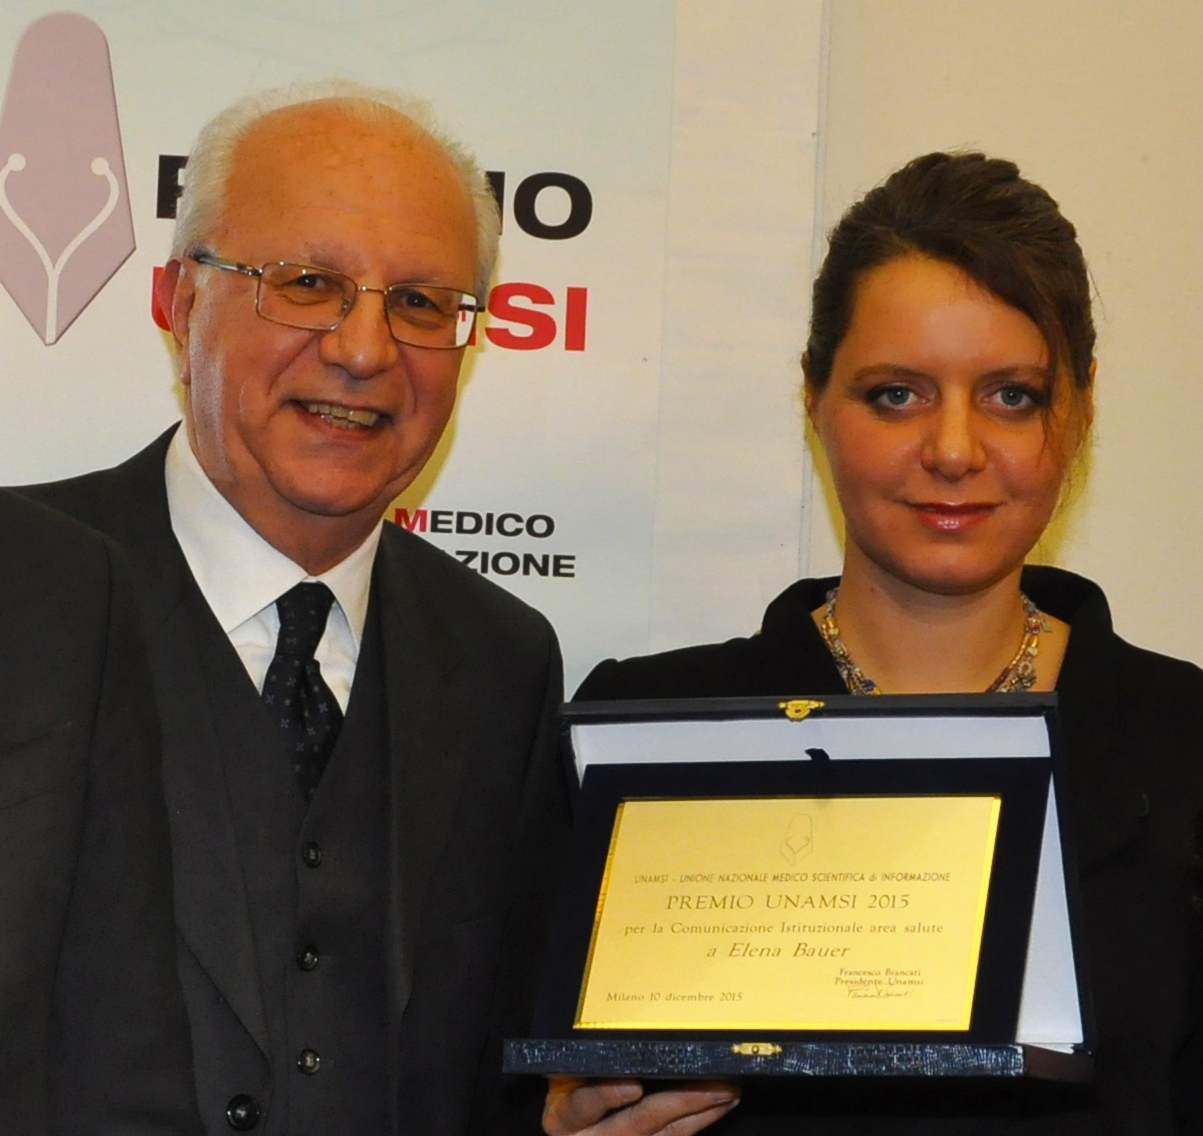 Elena Bauer con Francesco Brancati, Presidente Unamsi